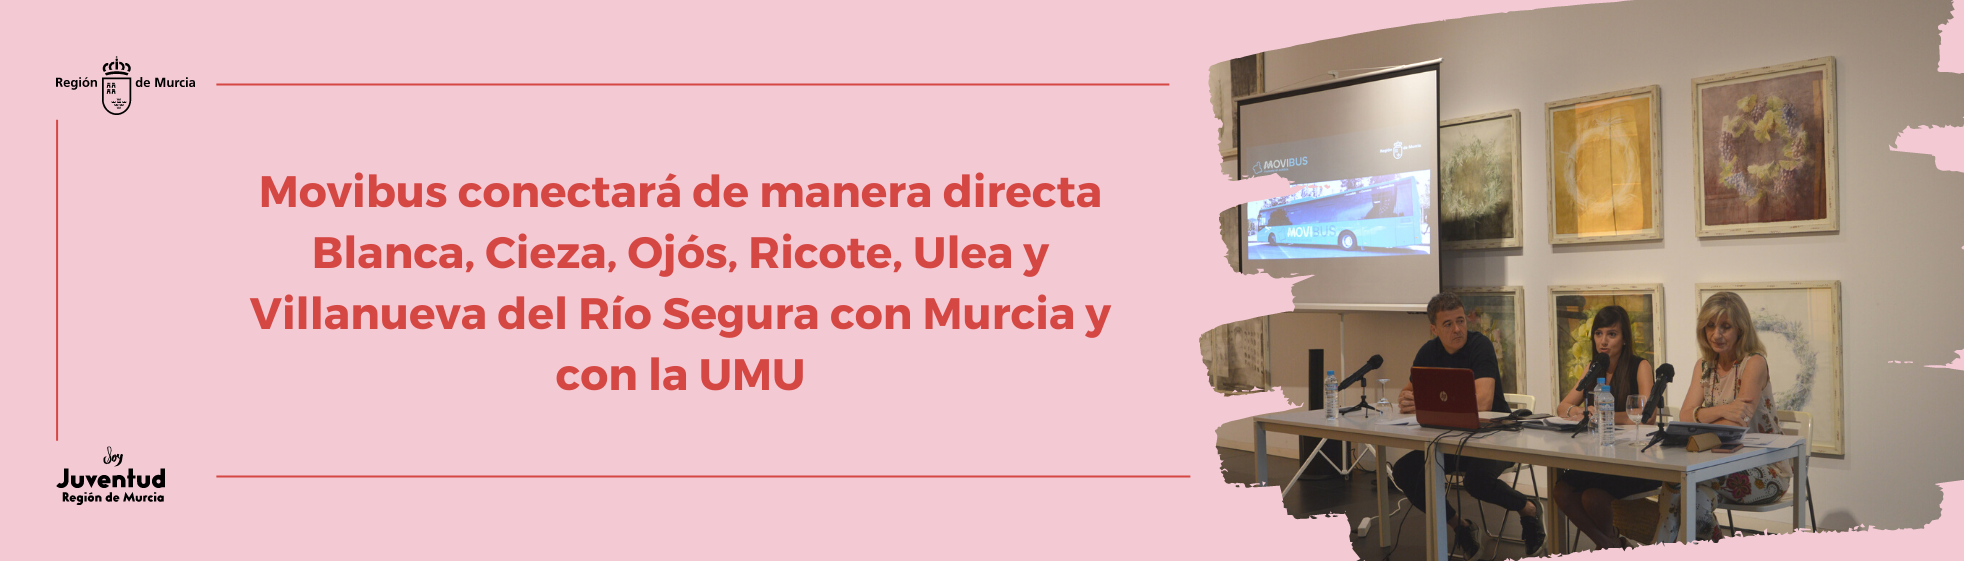 Movibus conectará de manera directa Blanca, Cieza, Ojós, Ricote, Ulea y Villanueva del Río Segura con Murcia y con la UMU